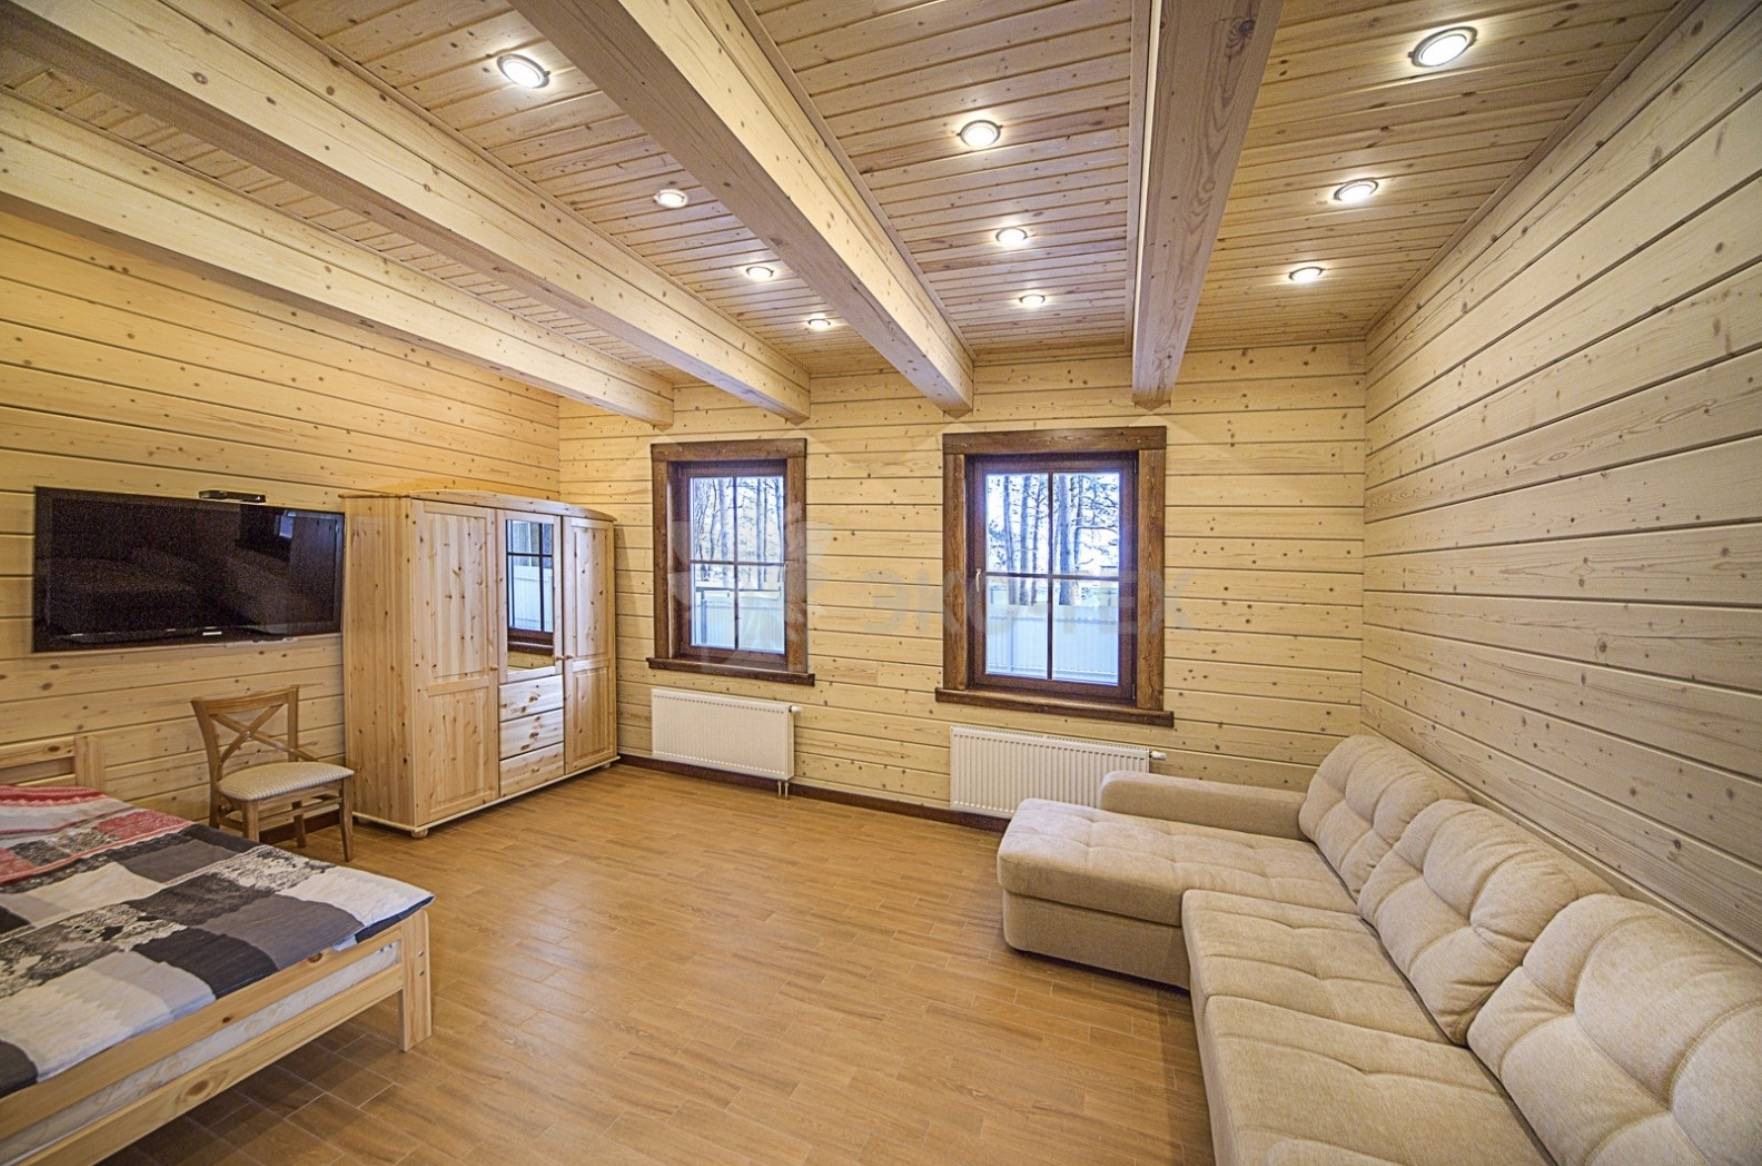 Внутренняя отделка деревянного дома: обшивка стен, отделка потолков, устройство пола, фото разных вариантов отделки